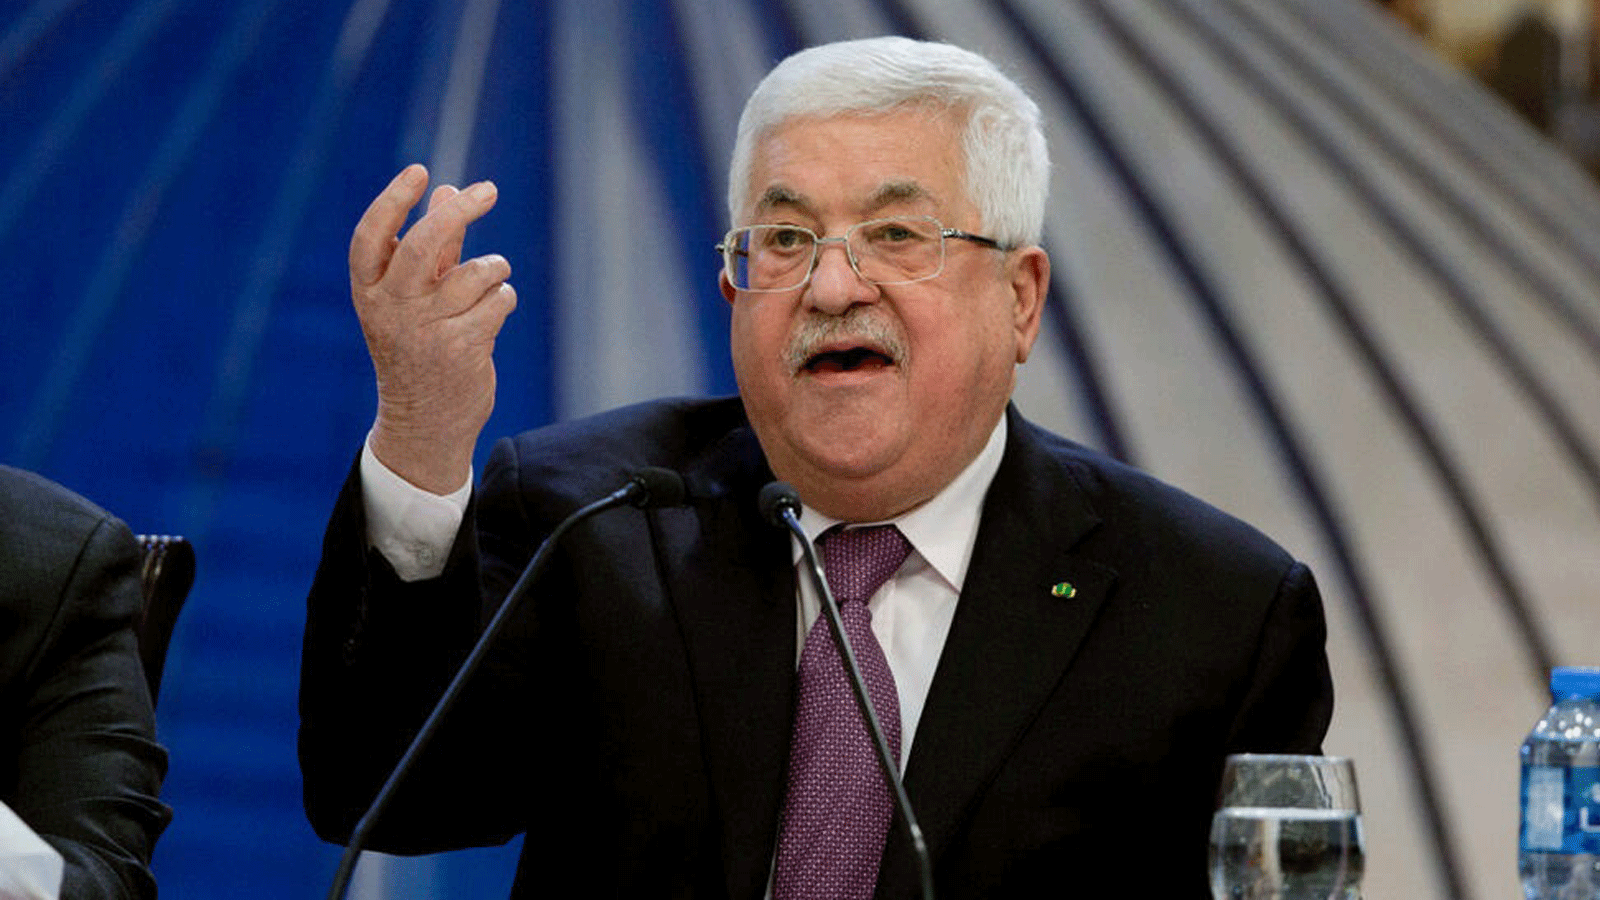 صورة للرئيس الفلسطيني محمود عباس وهو يتحدث بعد اجتماع للقيادة الفلسطينية في مدينة رام الله بالضفة الغربية.22 كانون الثاني/ يناير 2020